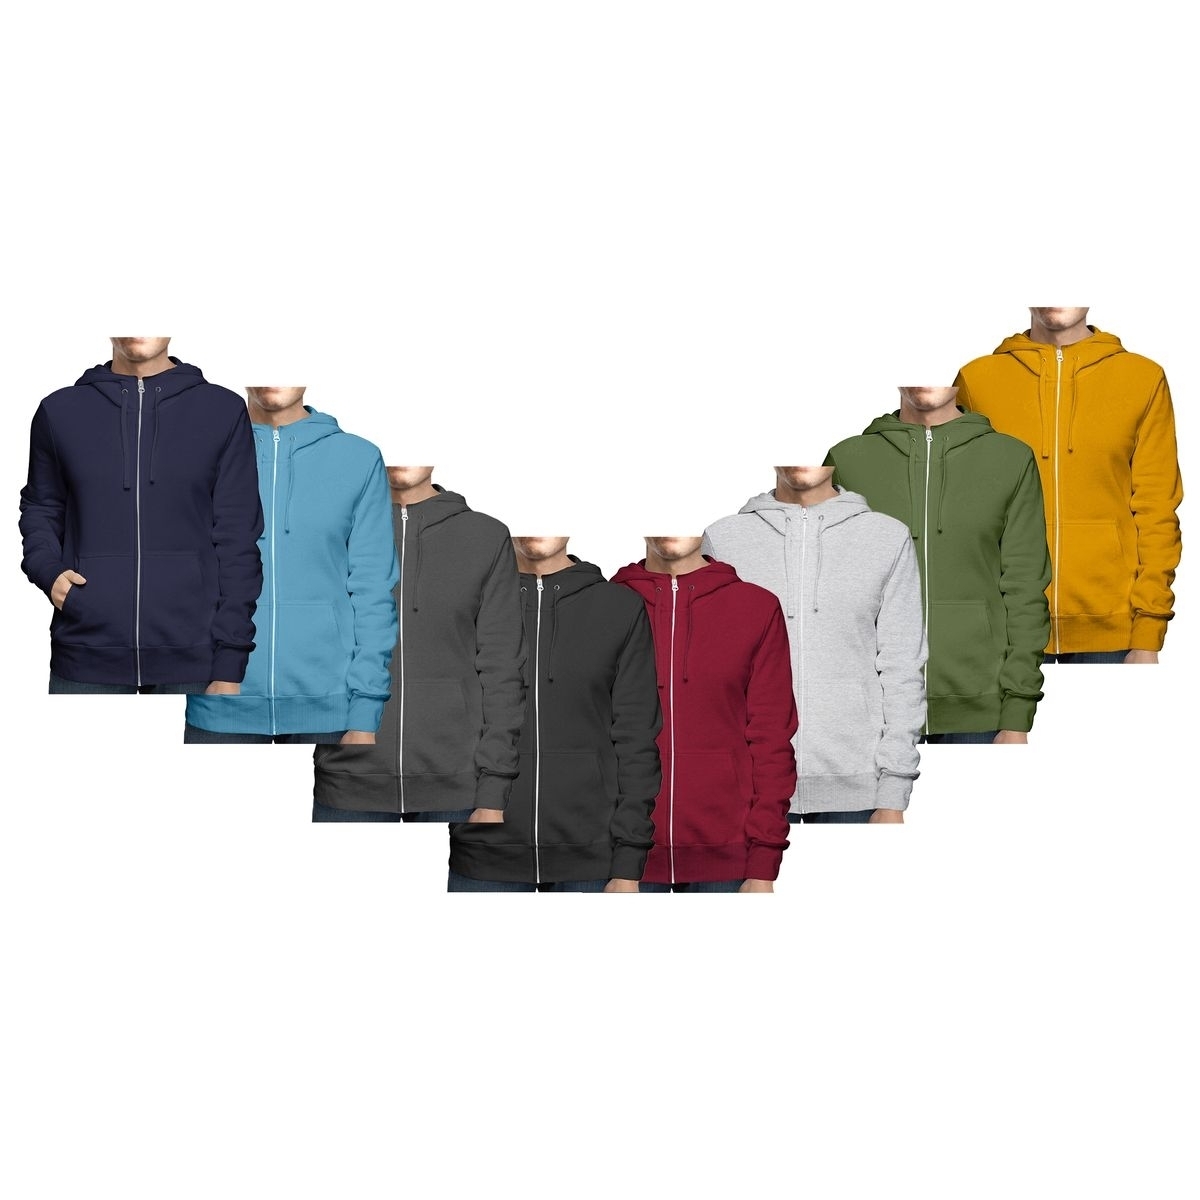 Men's Winter Warm Cozy Full Zip-Up Fleece Lined Soft Hoodie Sweatshirt - Black, Small